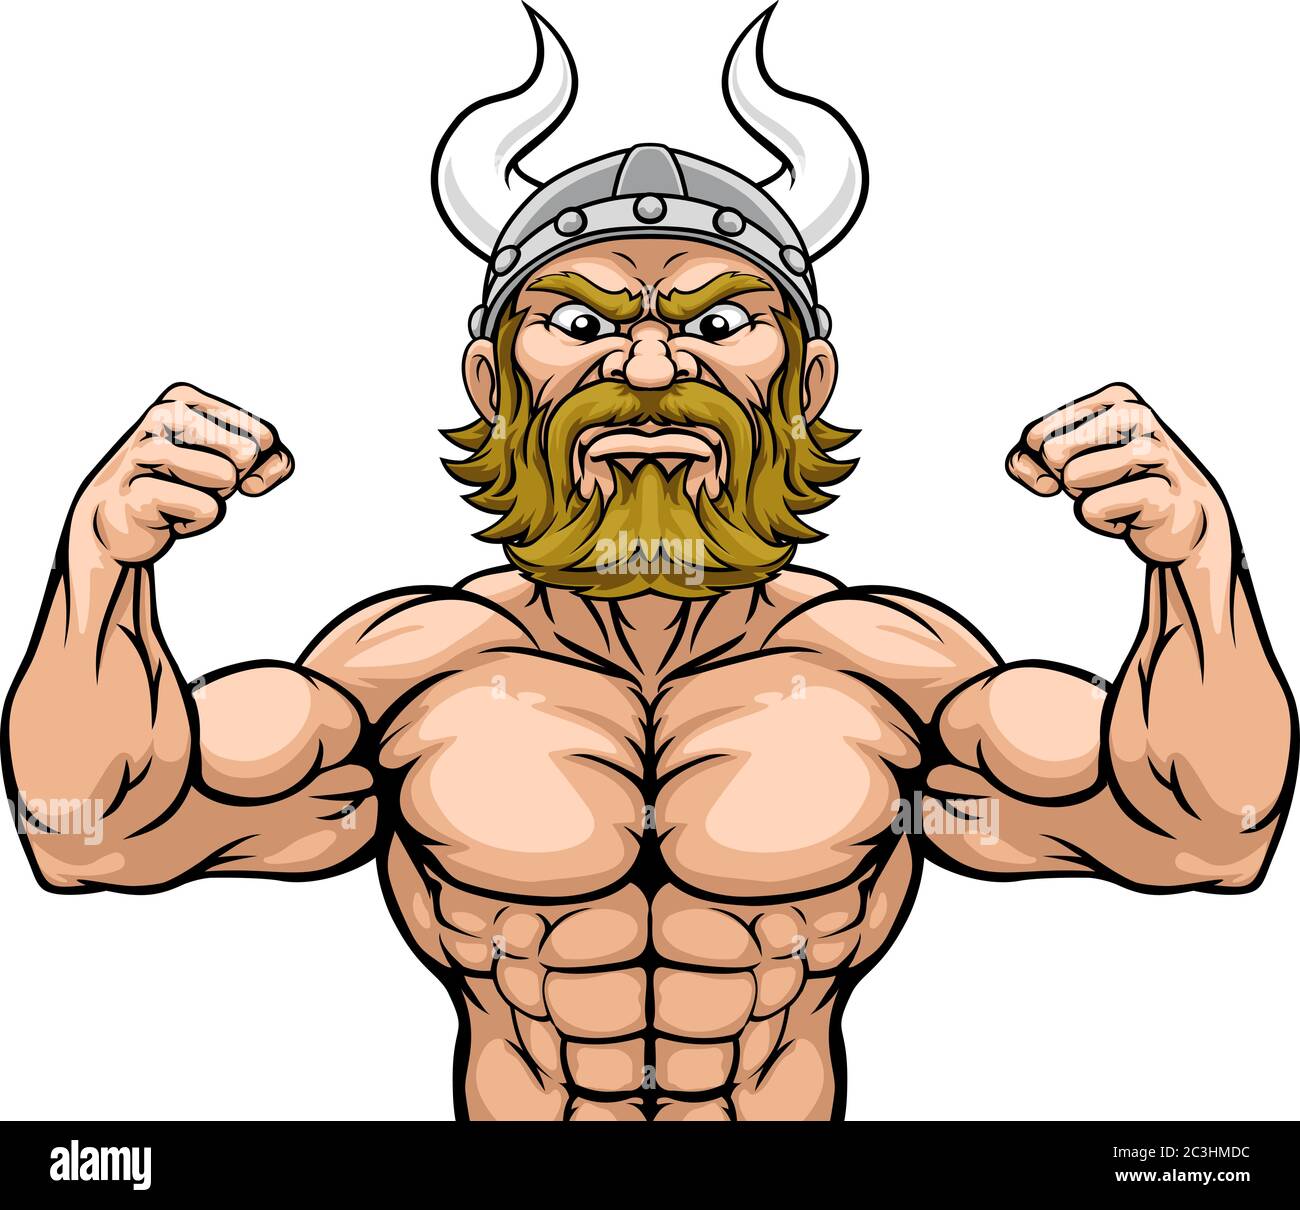 Mascotte barbariche vichinghe muscolo forte Cartoon Illustrazione Vettoriale